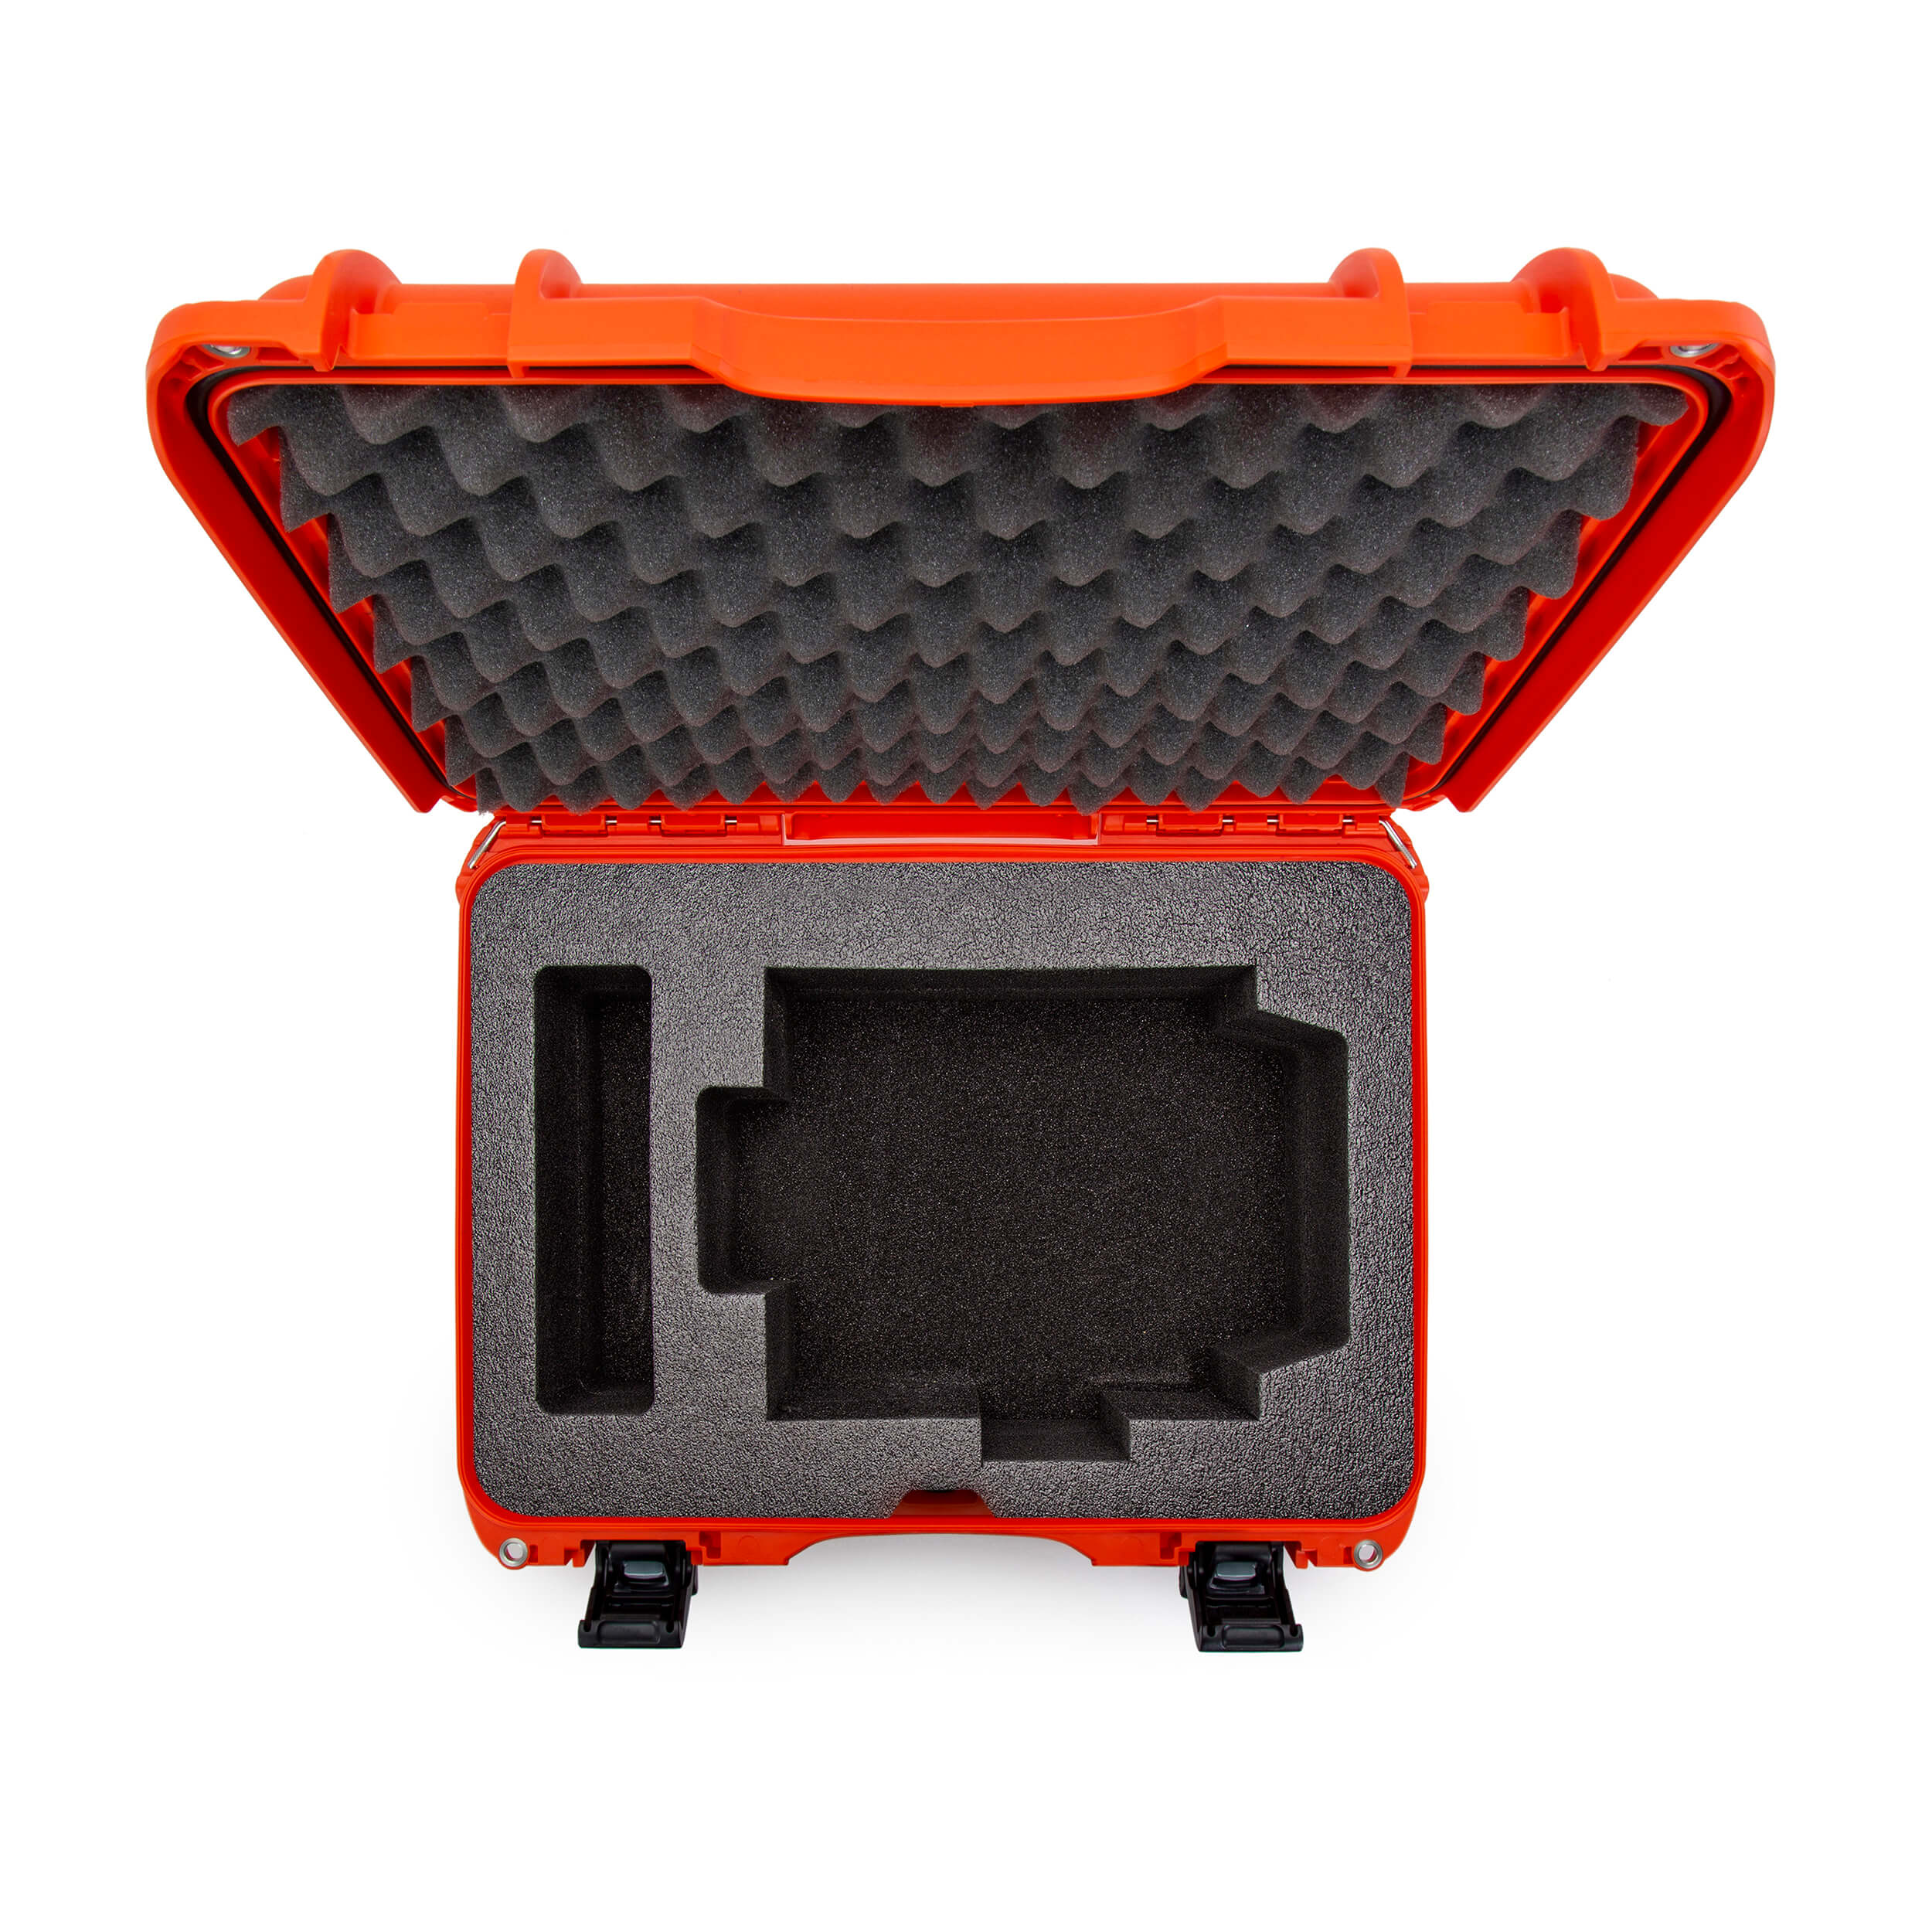 NANUK Media 925 For Matterport Pro1 or Pro2 3D Camera Orange